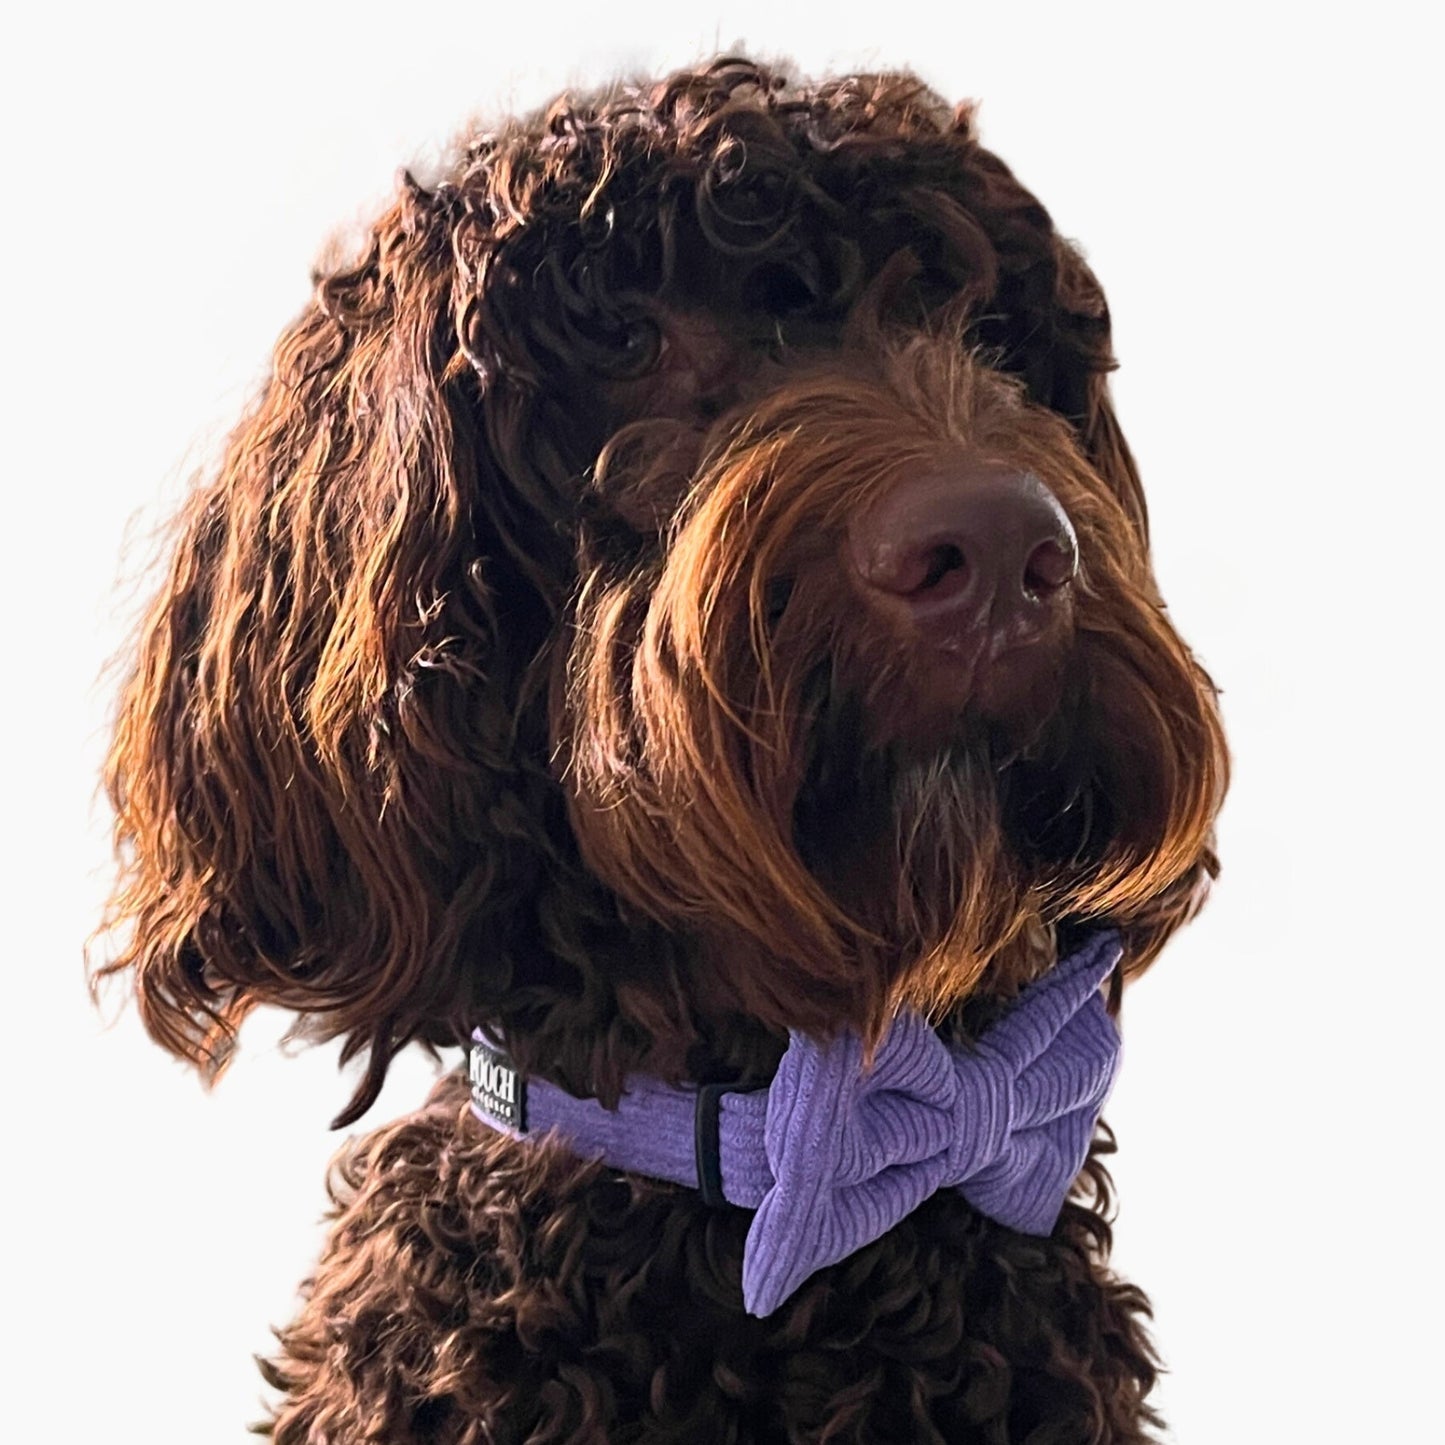 Corduroy Bow Tie - Dusty Purple - Pooch Luxury